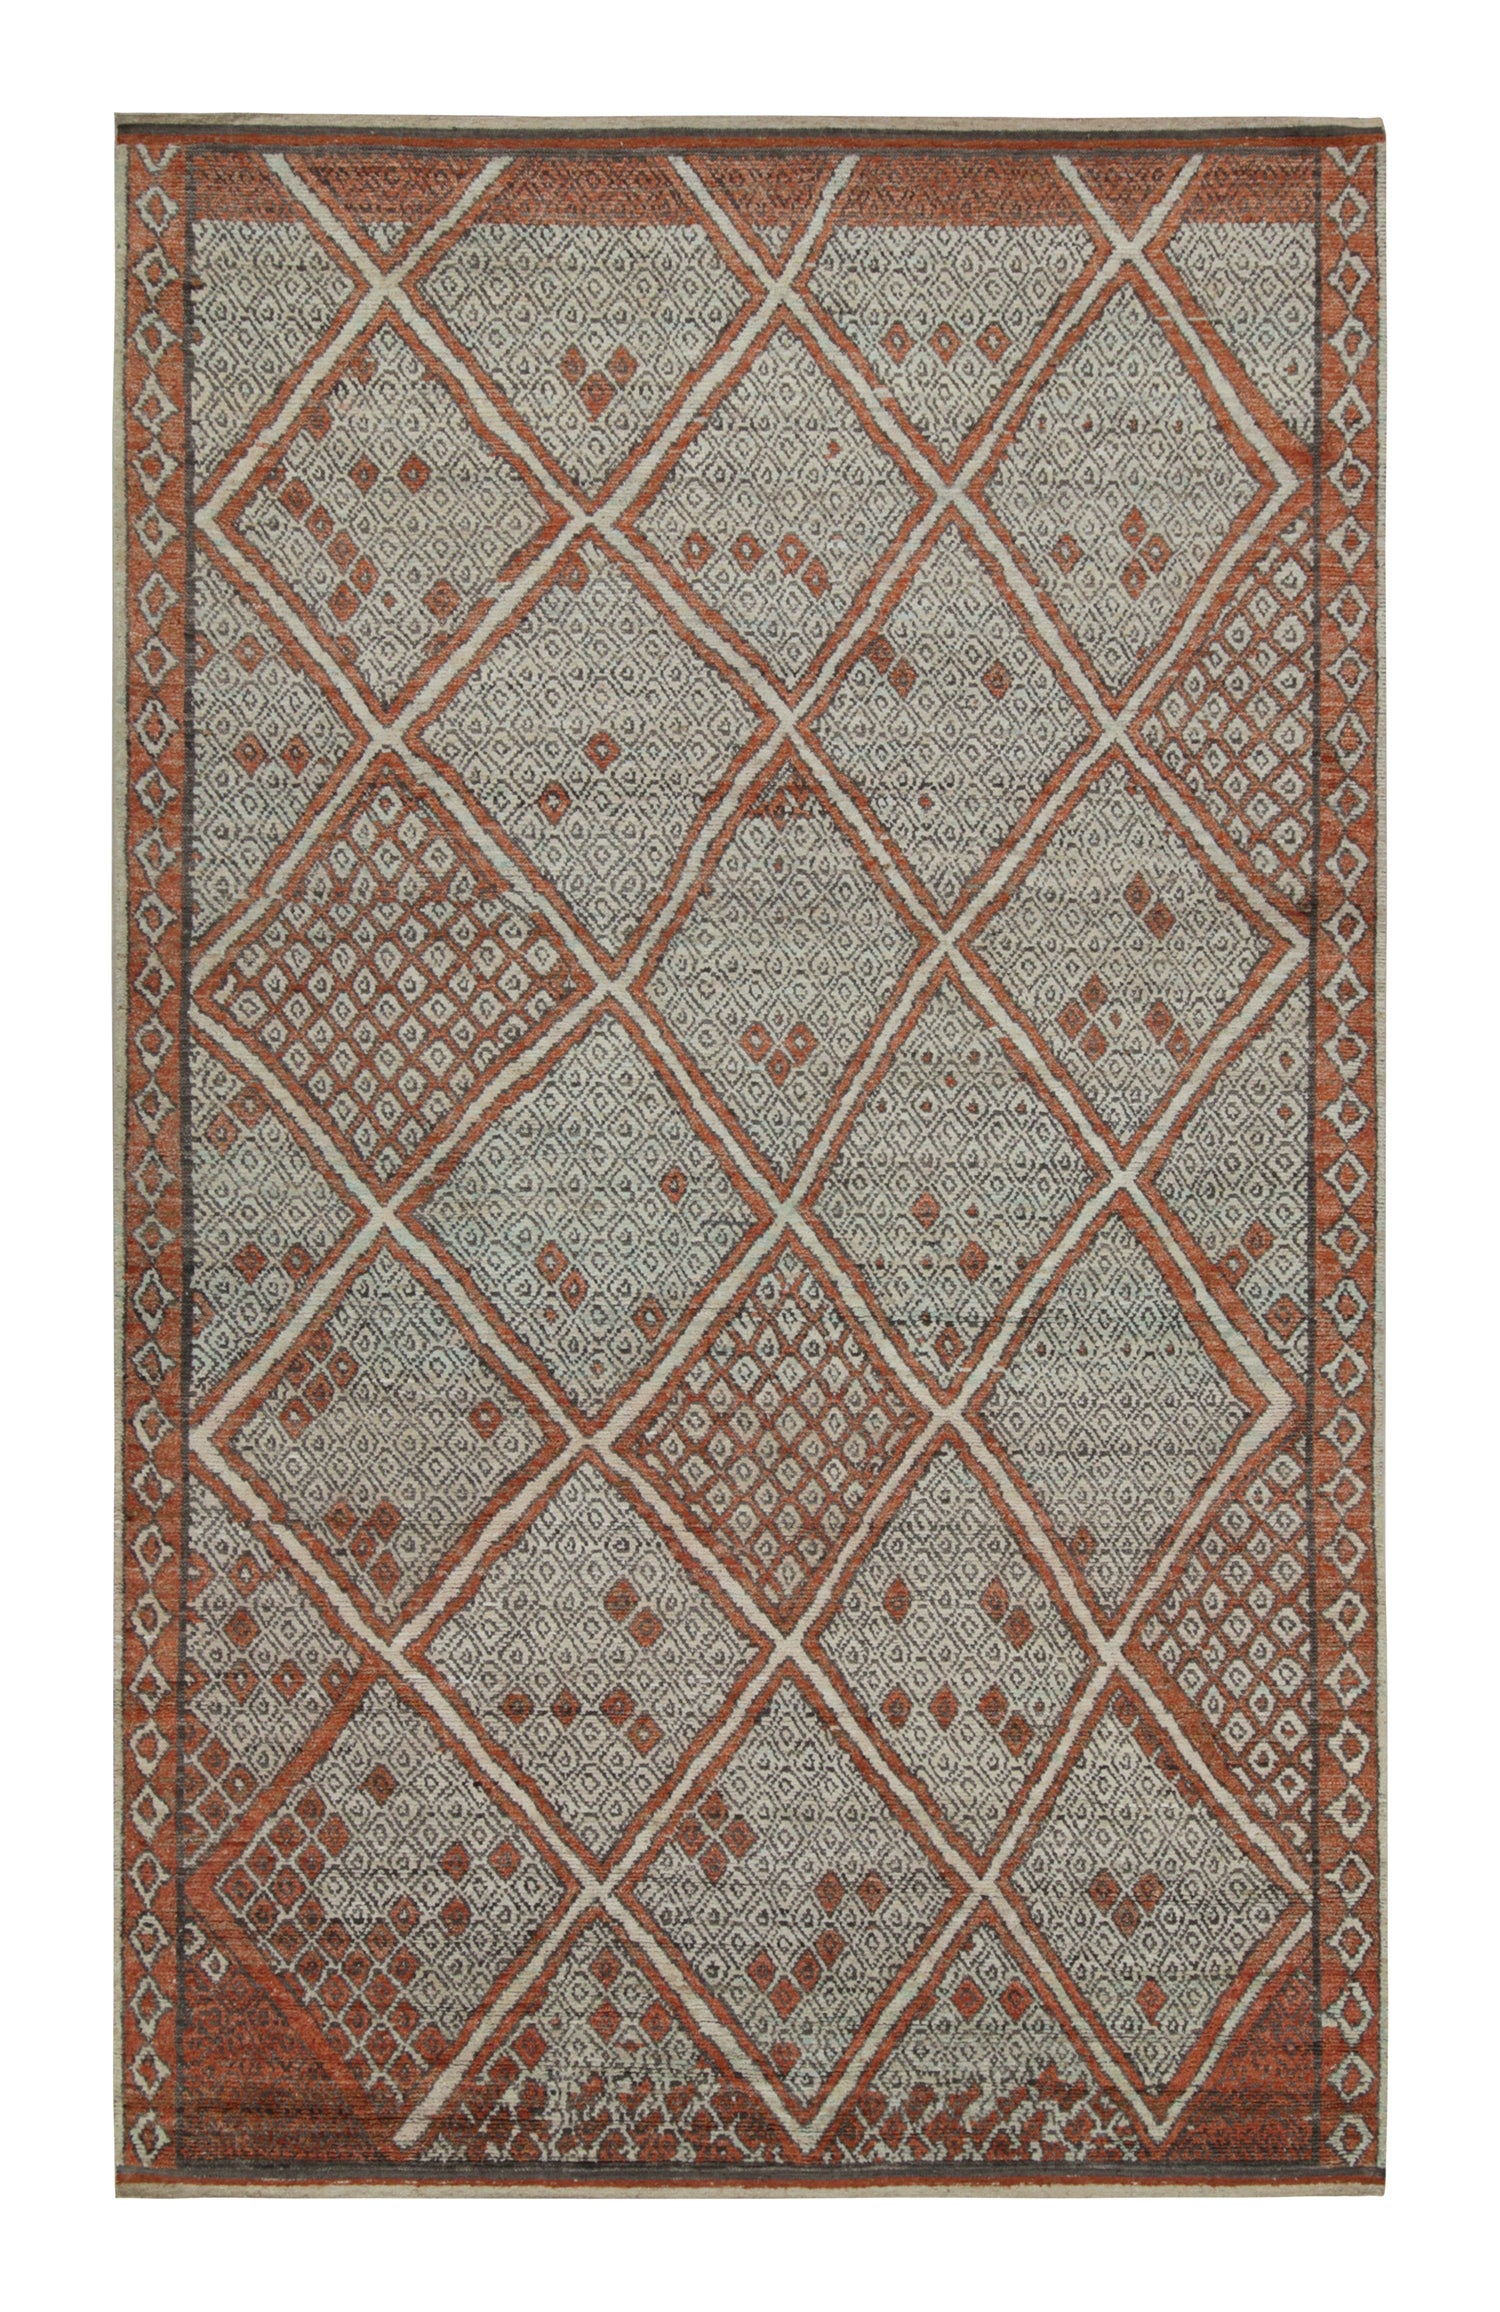 Tapis et tapis de style marocain de Kilim à motifs de diamants rouge auburn et gris